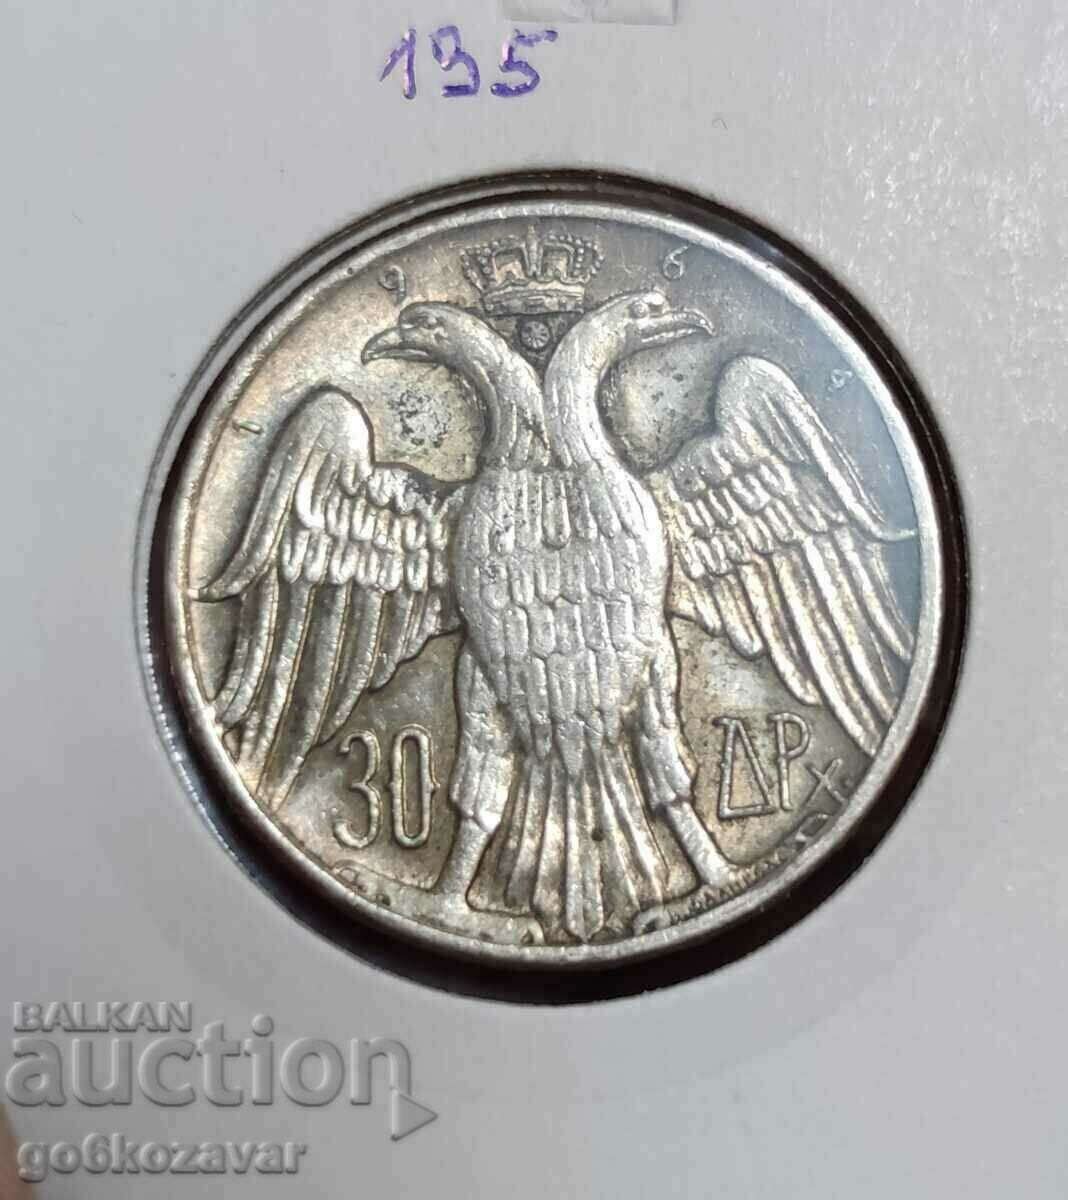 Greece 30 drachmas 1964 Silver!